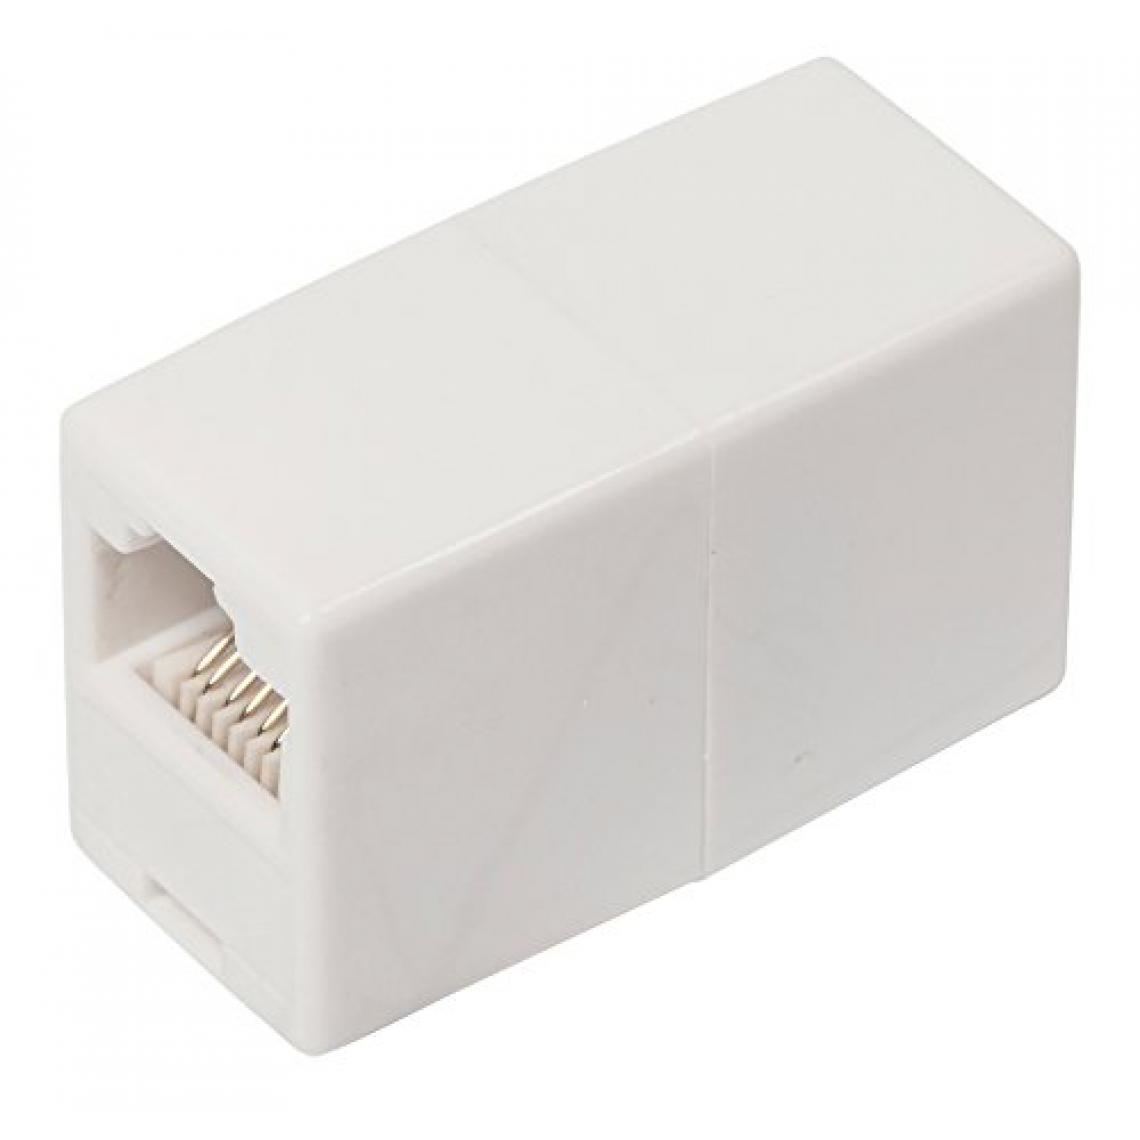 Ansco - Valueline TEL-0008 8/8 Adaptateur avec fiche RJ45 femelle ET fiche RJ45 femelle, ivoire Coupleur Informatique ou téléphone - Switch